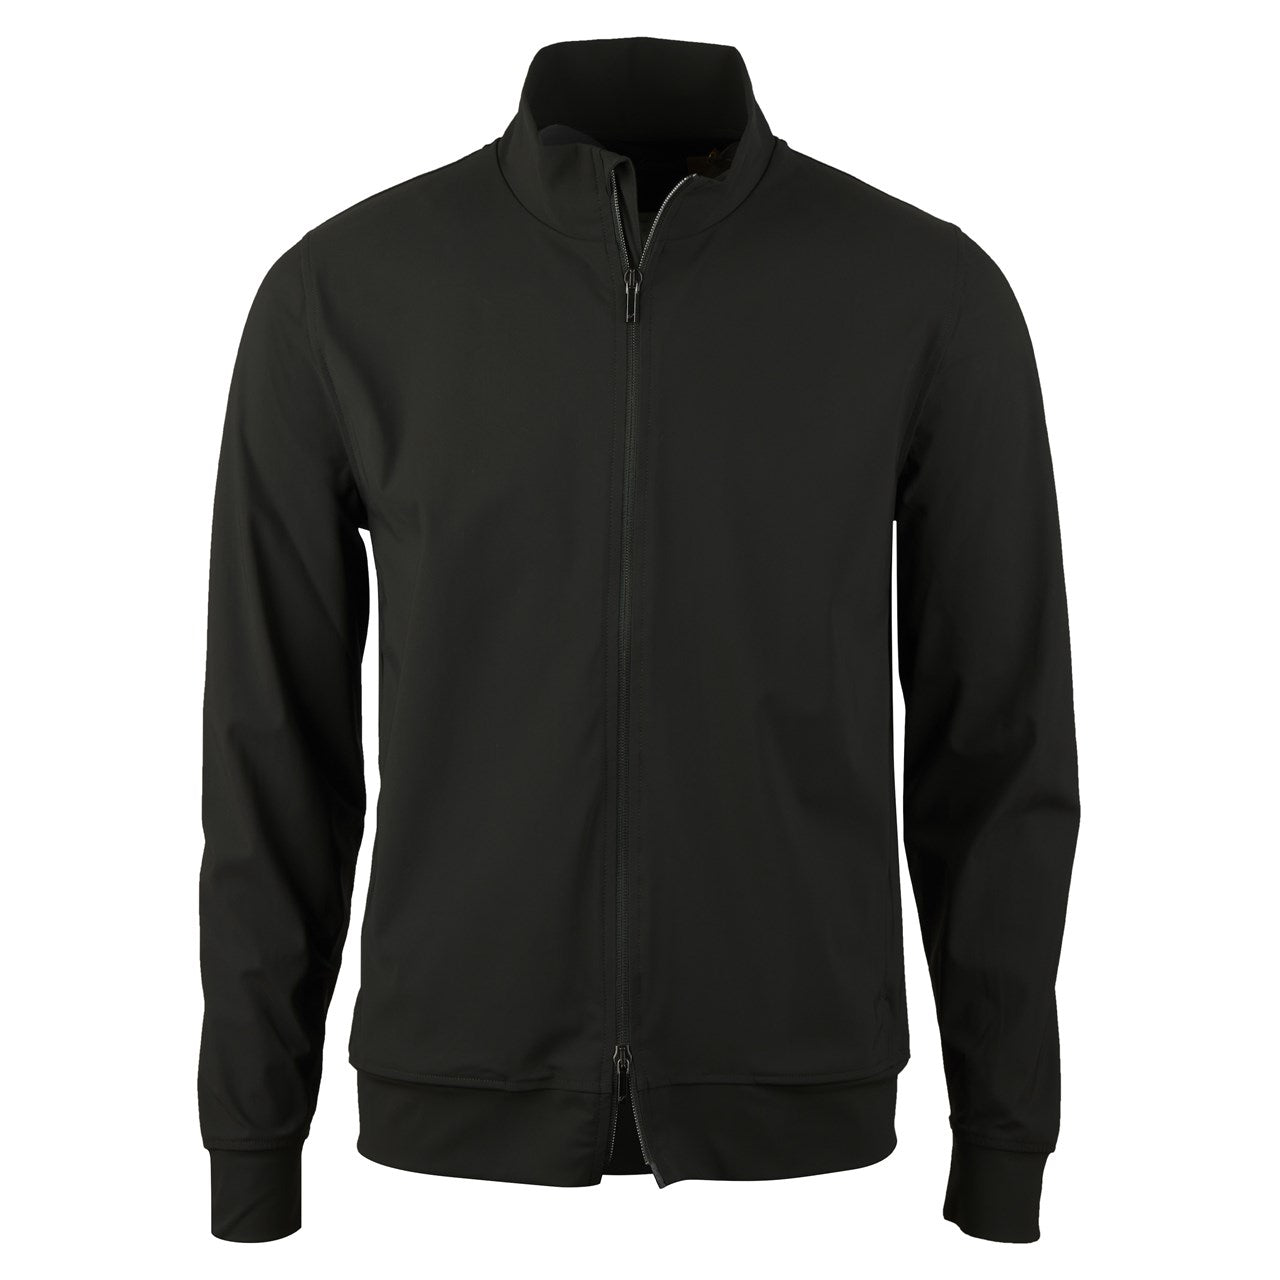 STENSTROMS - Dark Green Full-Zip Leisure Jacket in 4 Way Stretch Fabric